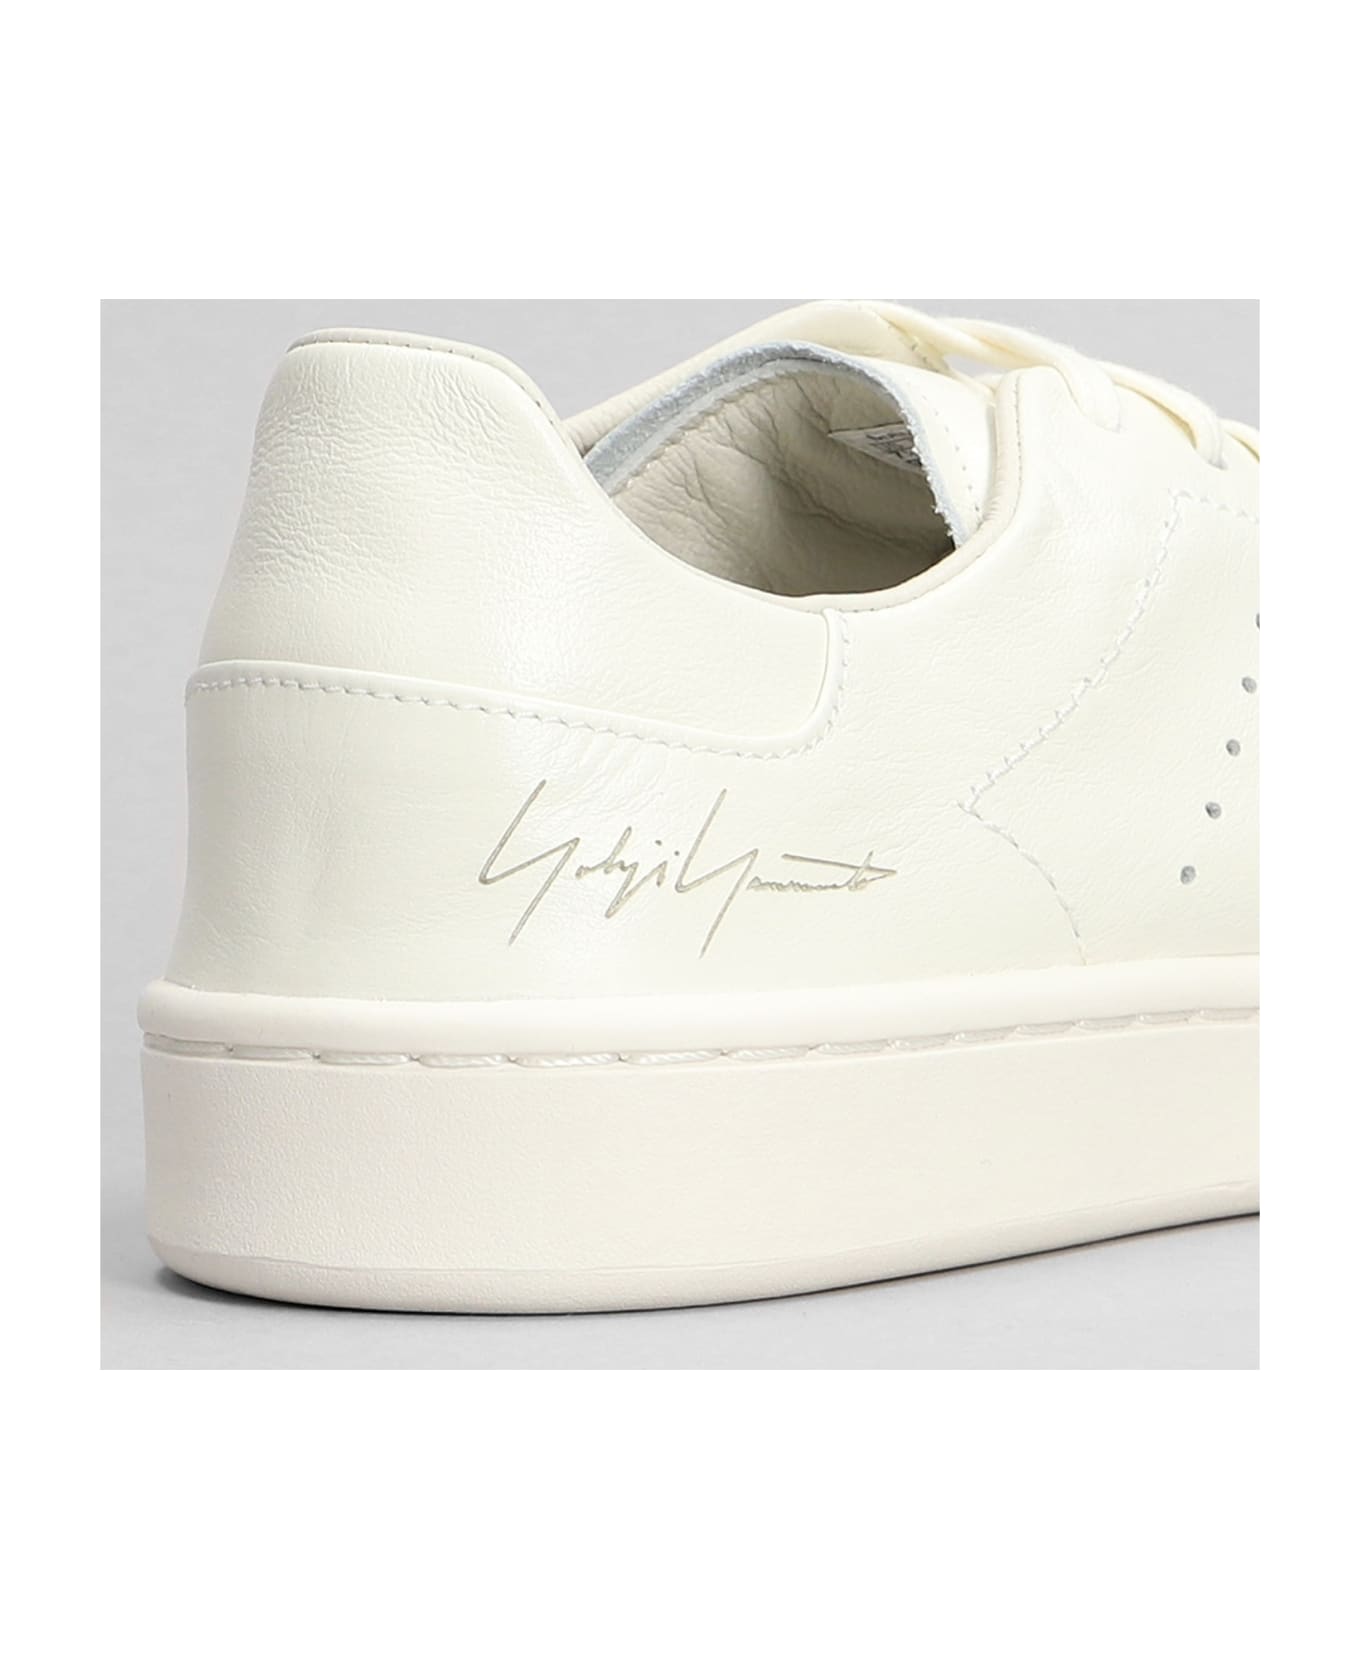 Y-3 Stan Smith Sneakers - Owhite/owhite